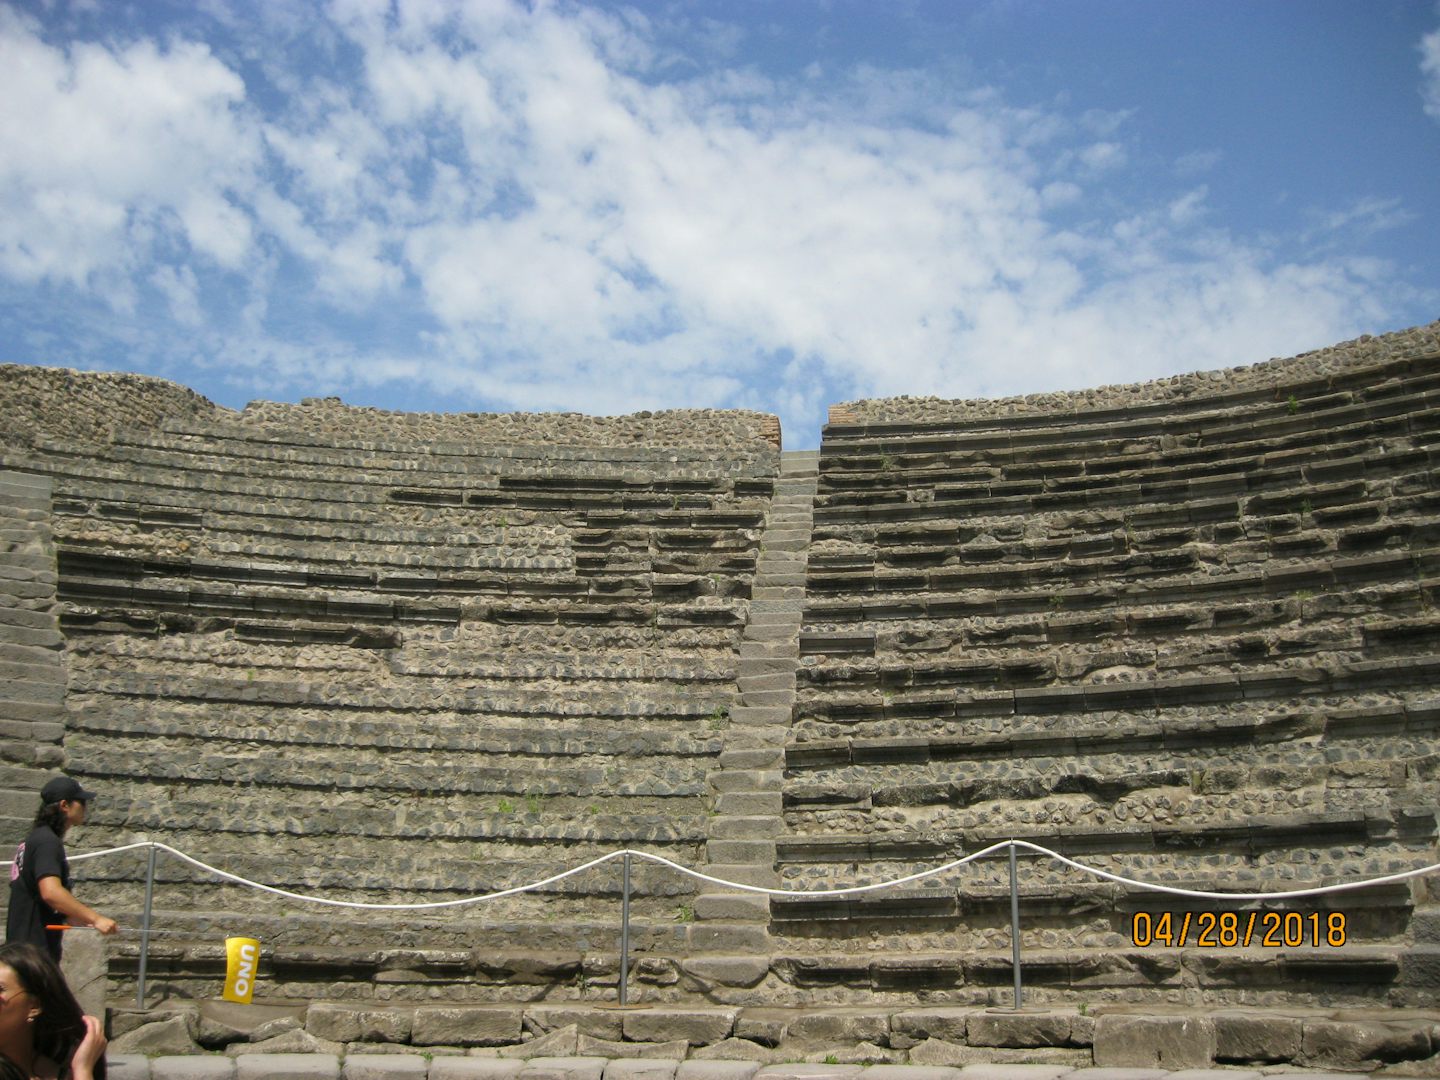 Theatre in Pompeii